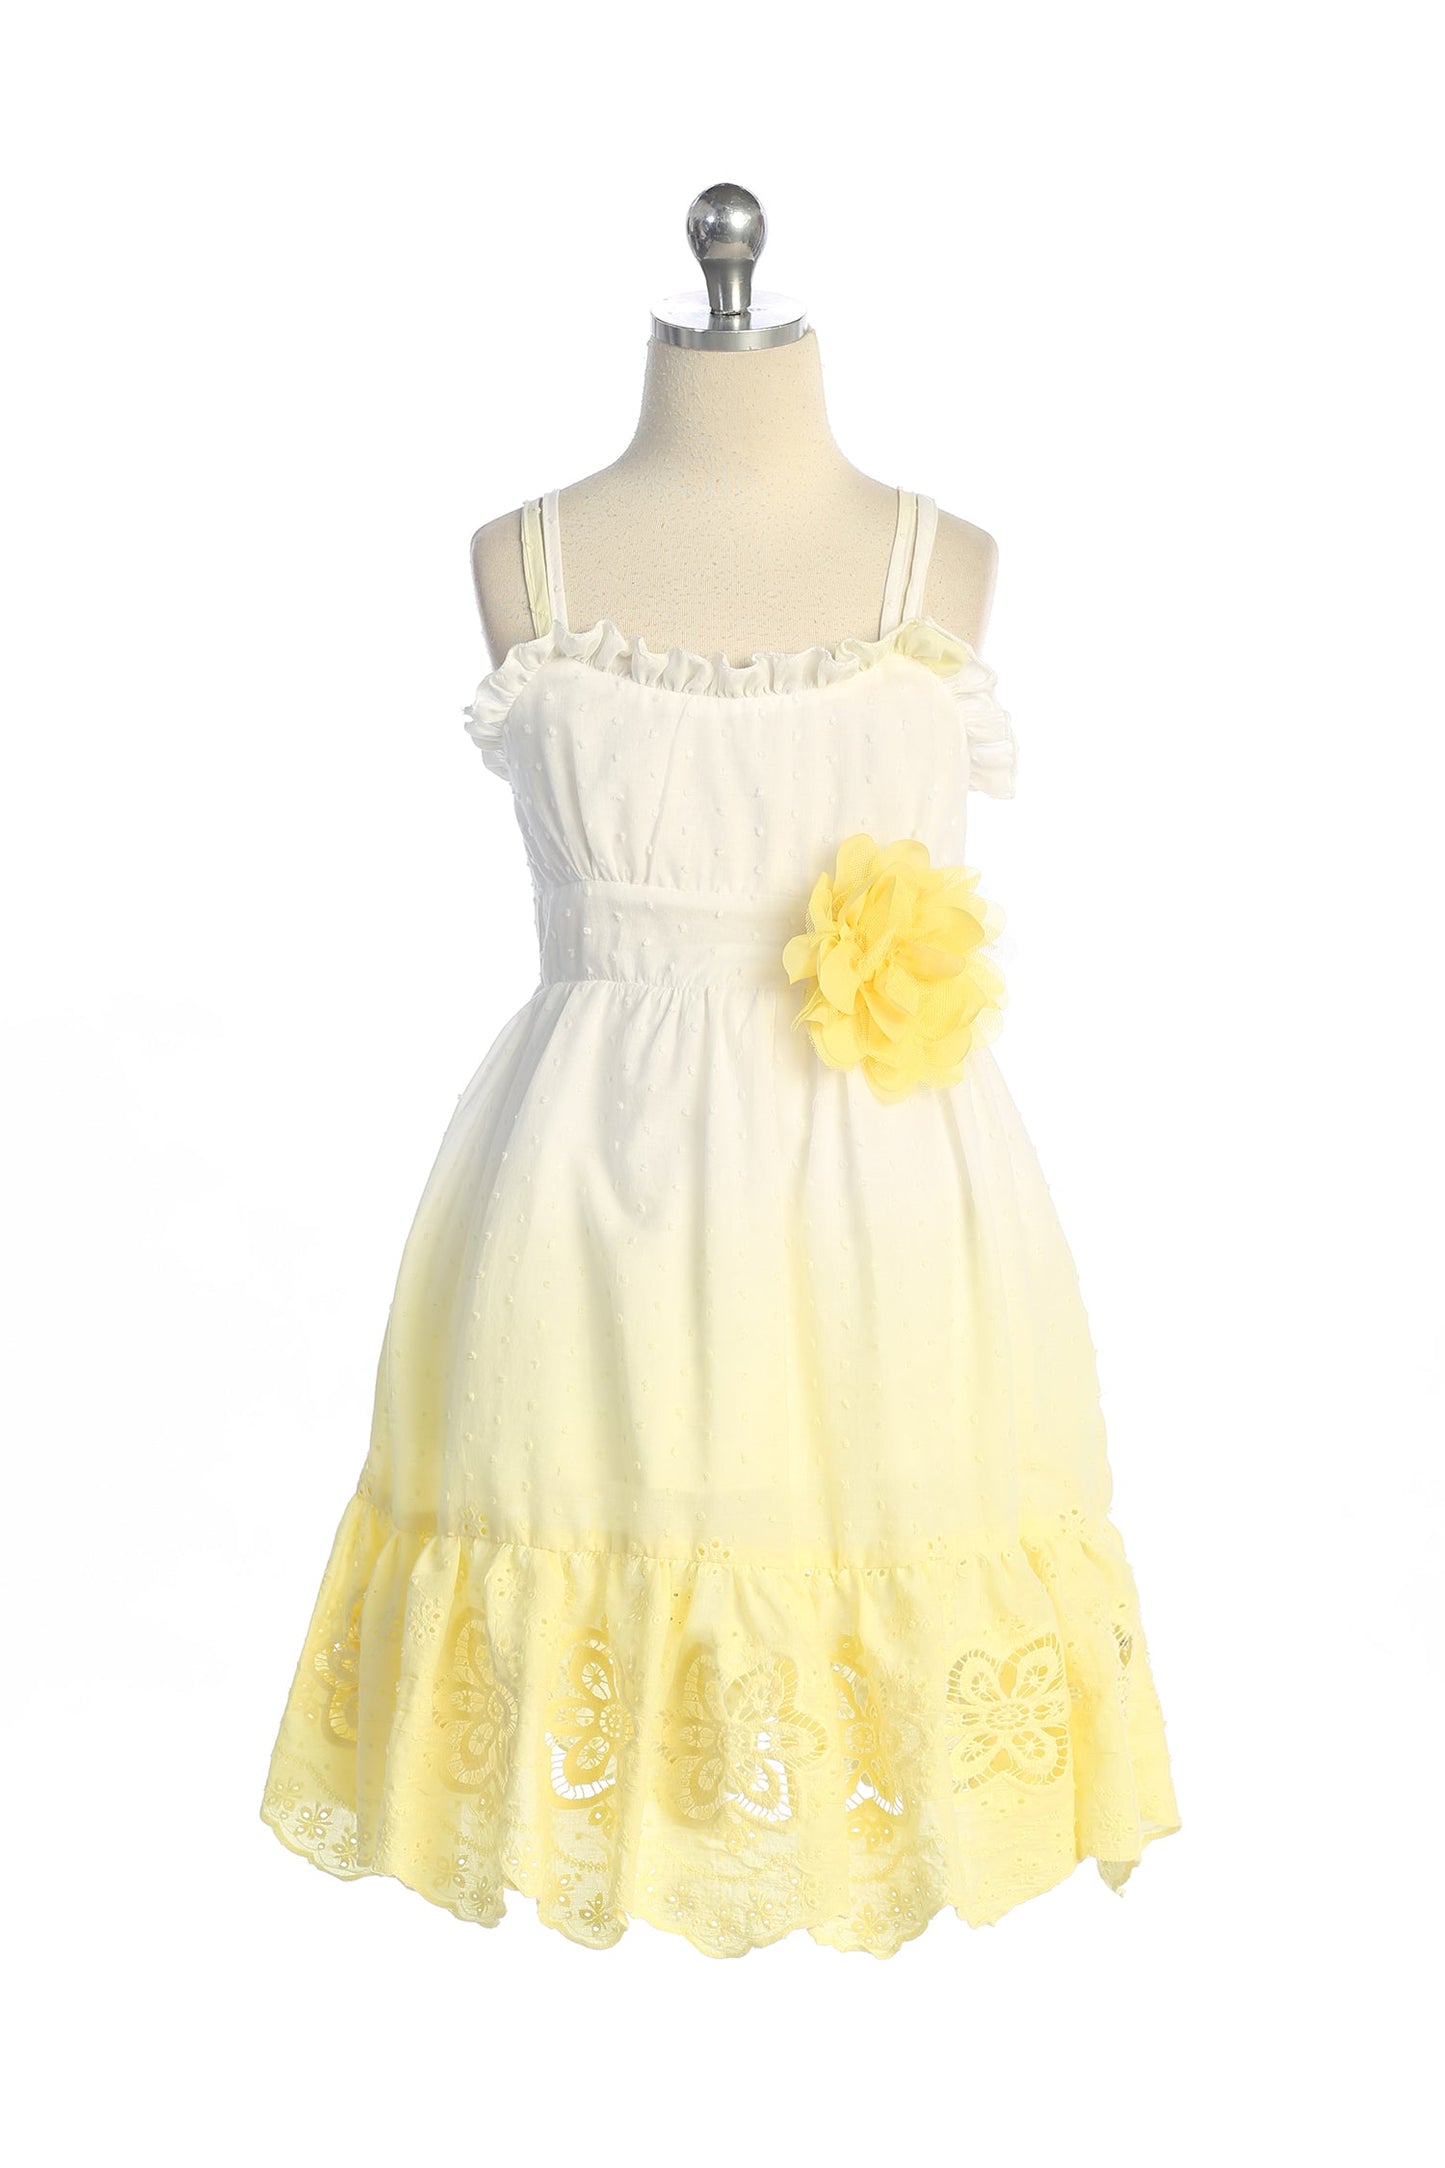 536A- Ruffle Ombre Cotton Dress